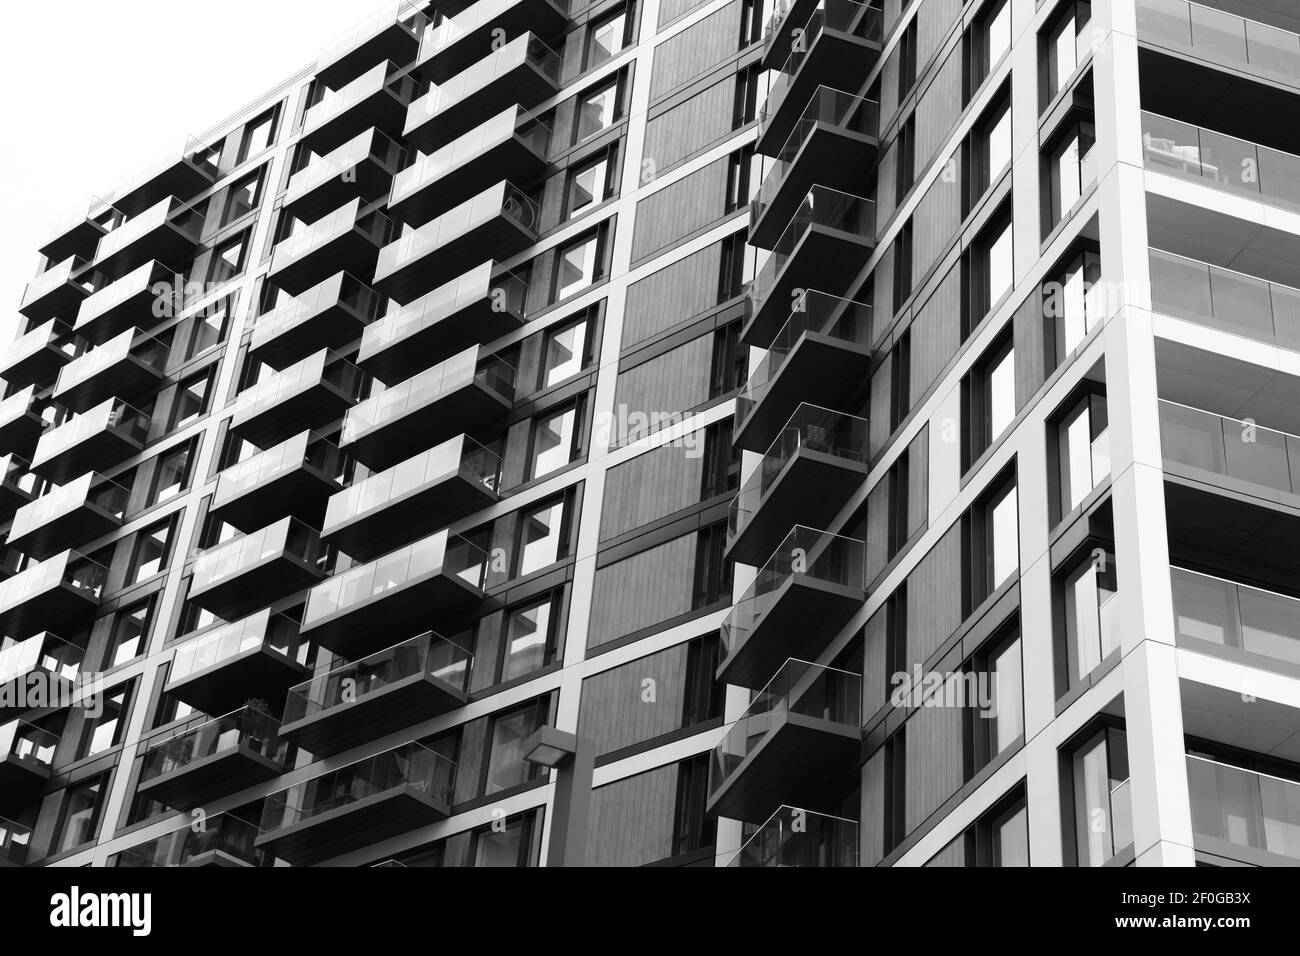 Moderno blocco di appartamenti con balconi Foto Stock